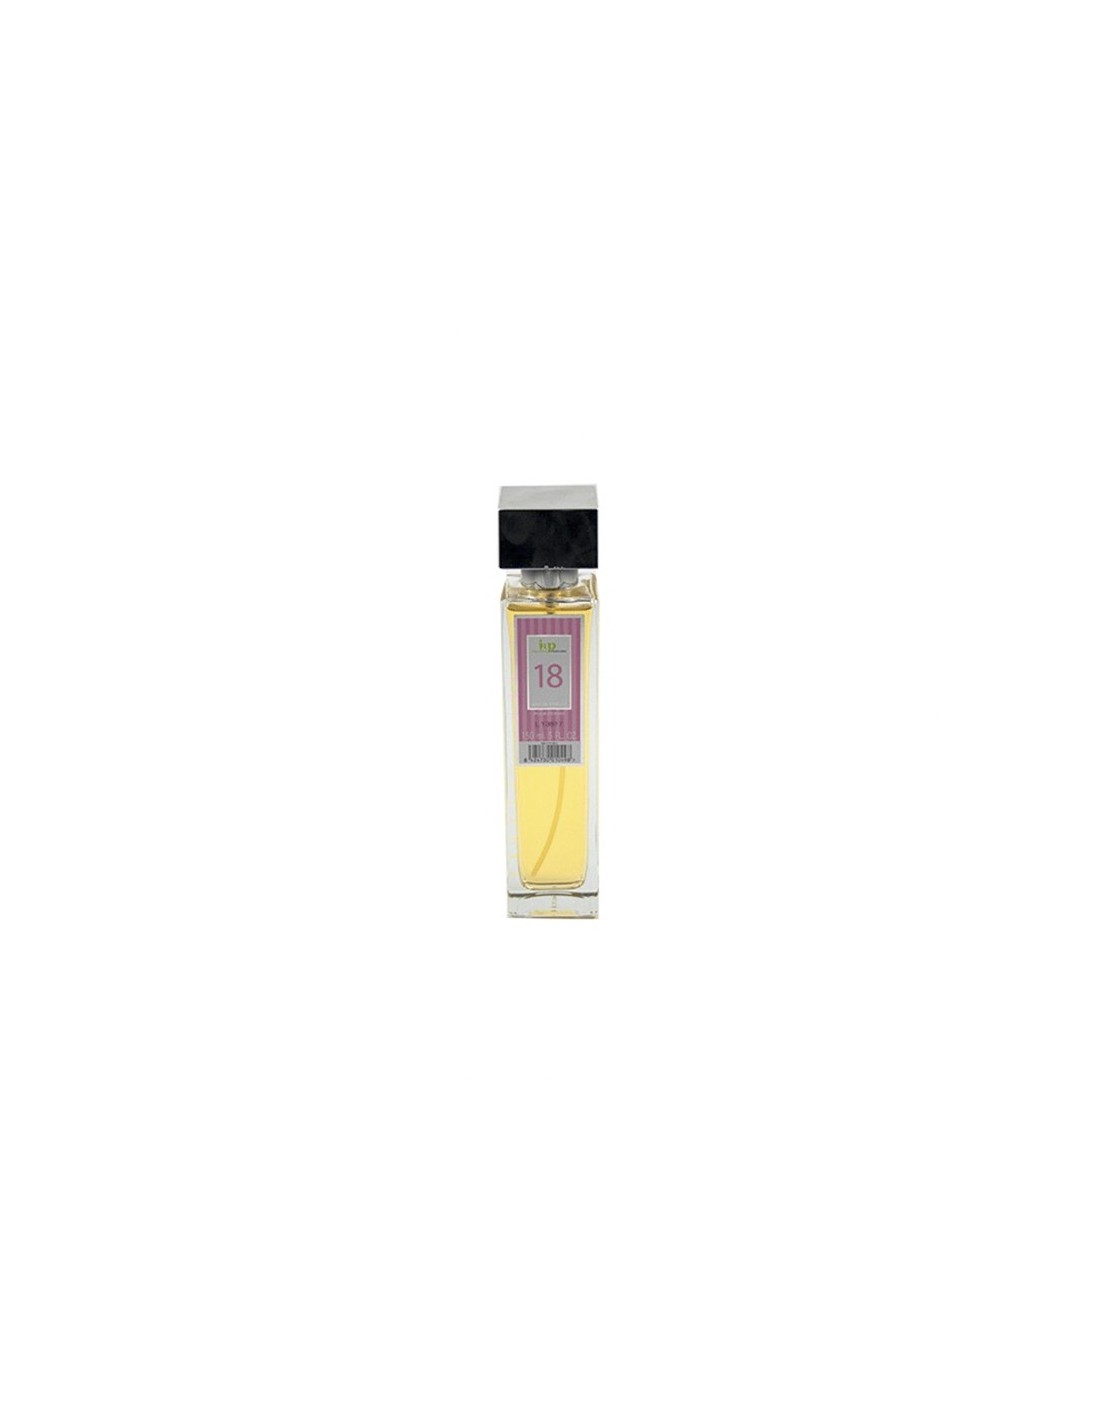 IAP Perfume Mujer N18 150ml